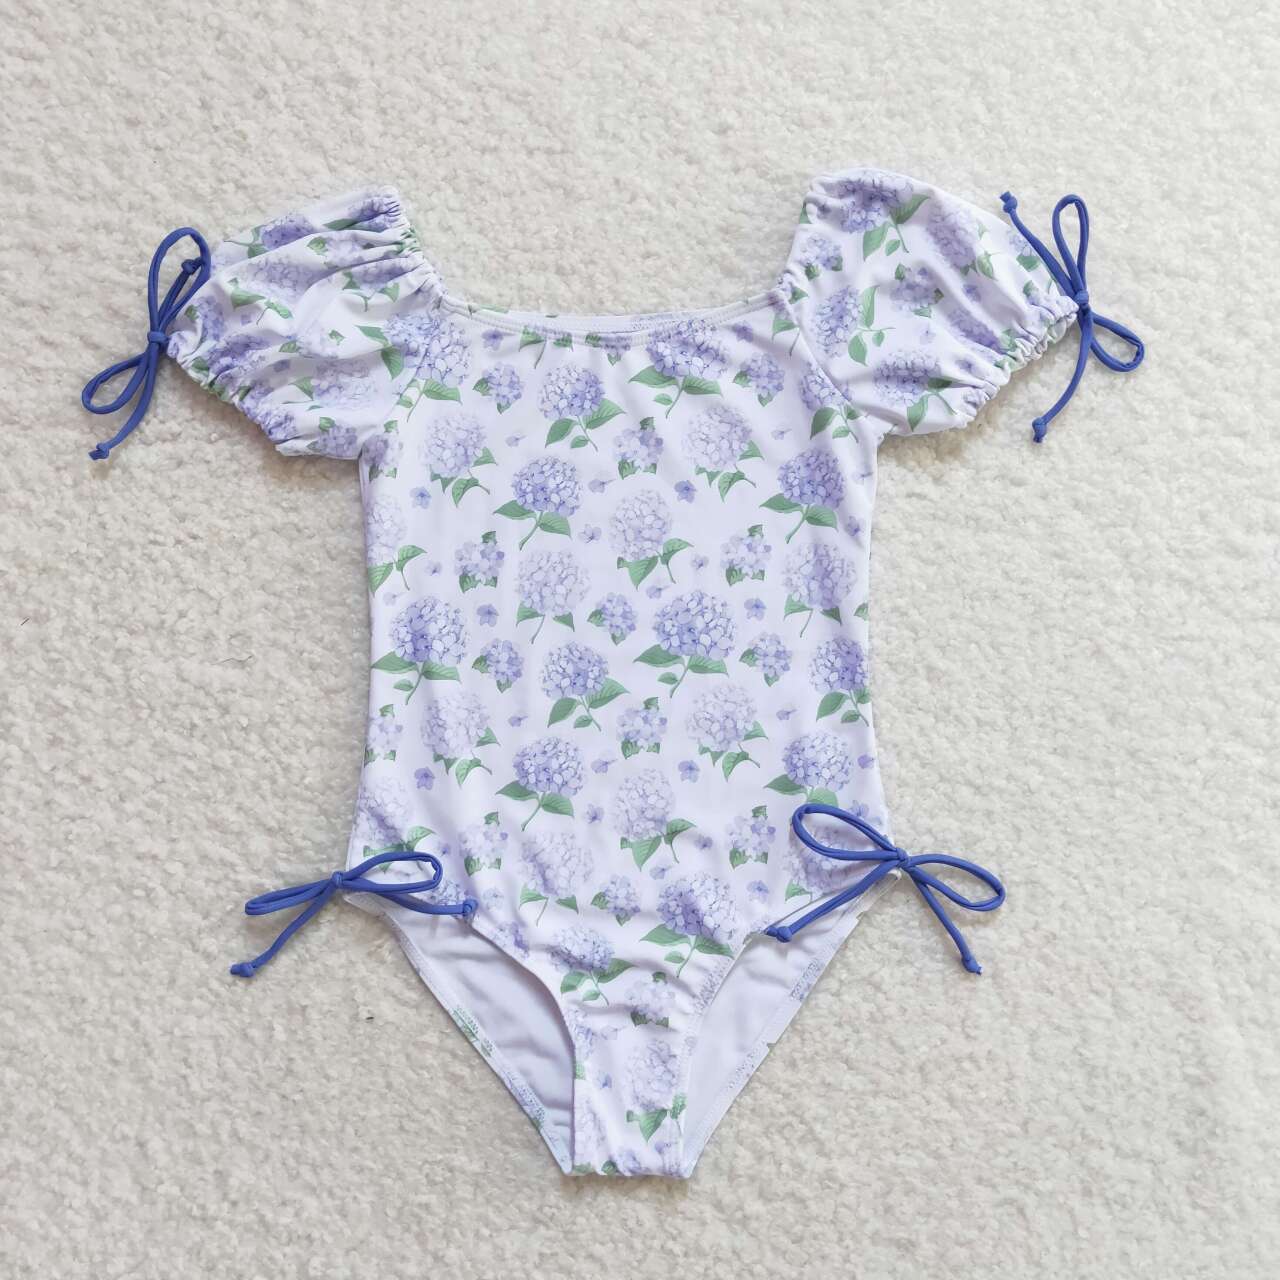 S0329 Hydrangea purple flower one-piece swimsuit